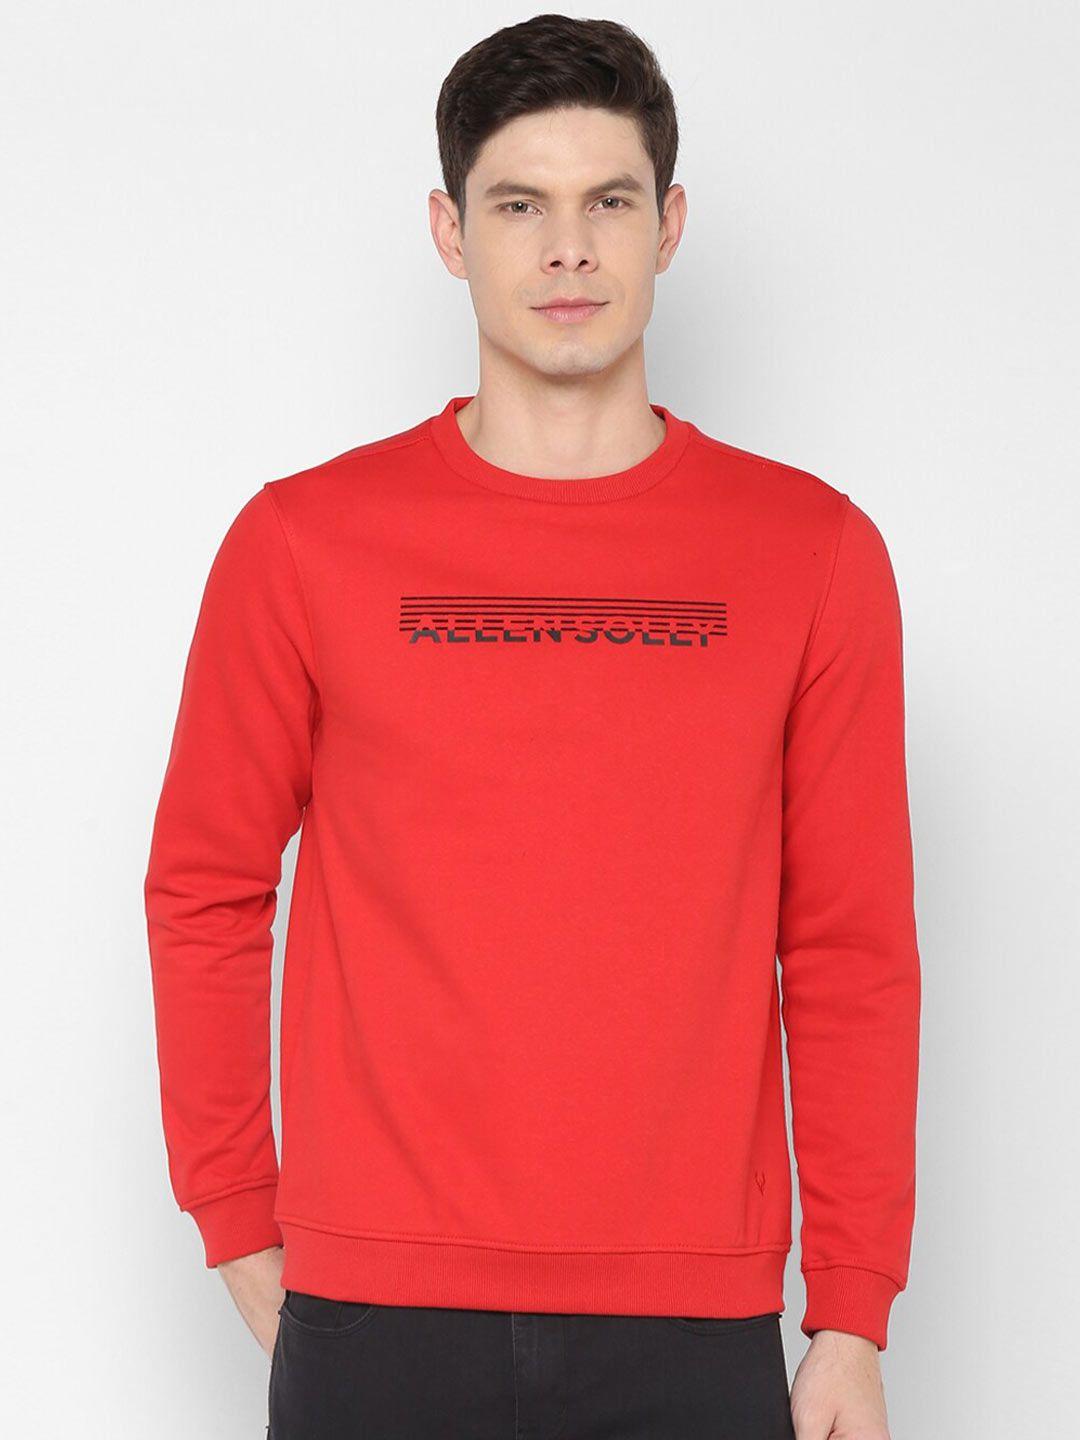 allen-solly-men-red-cotton-sweatshirt